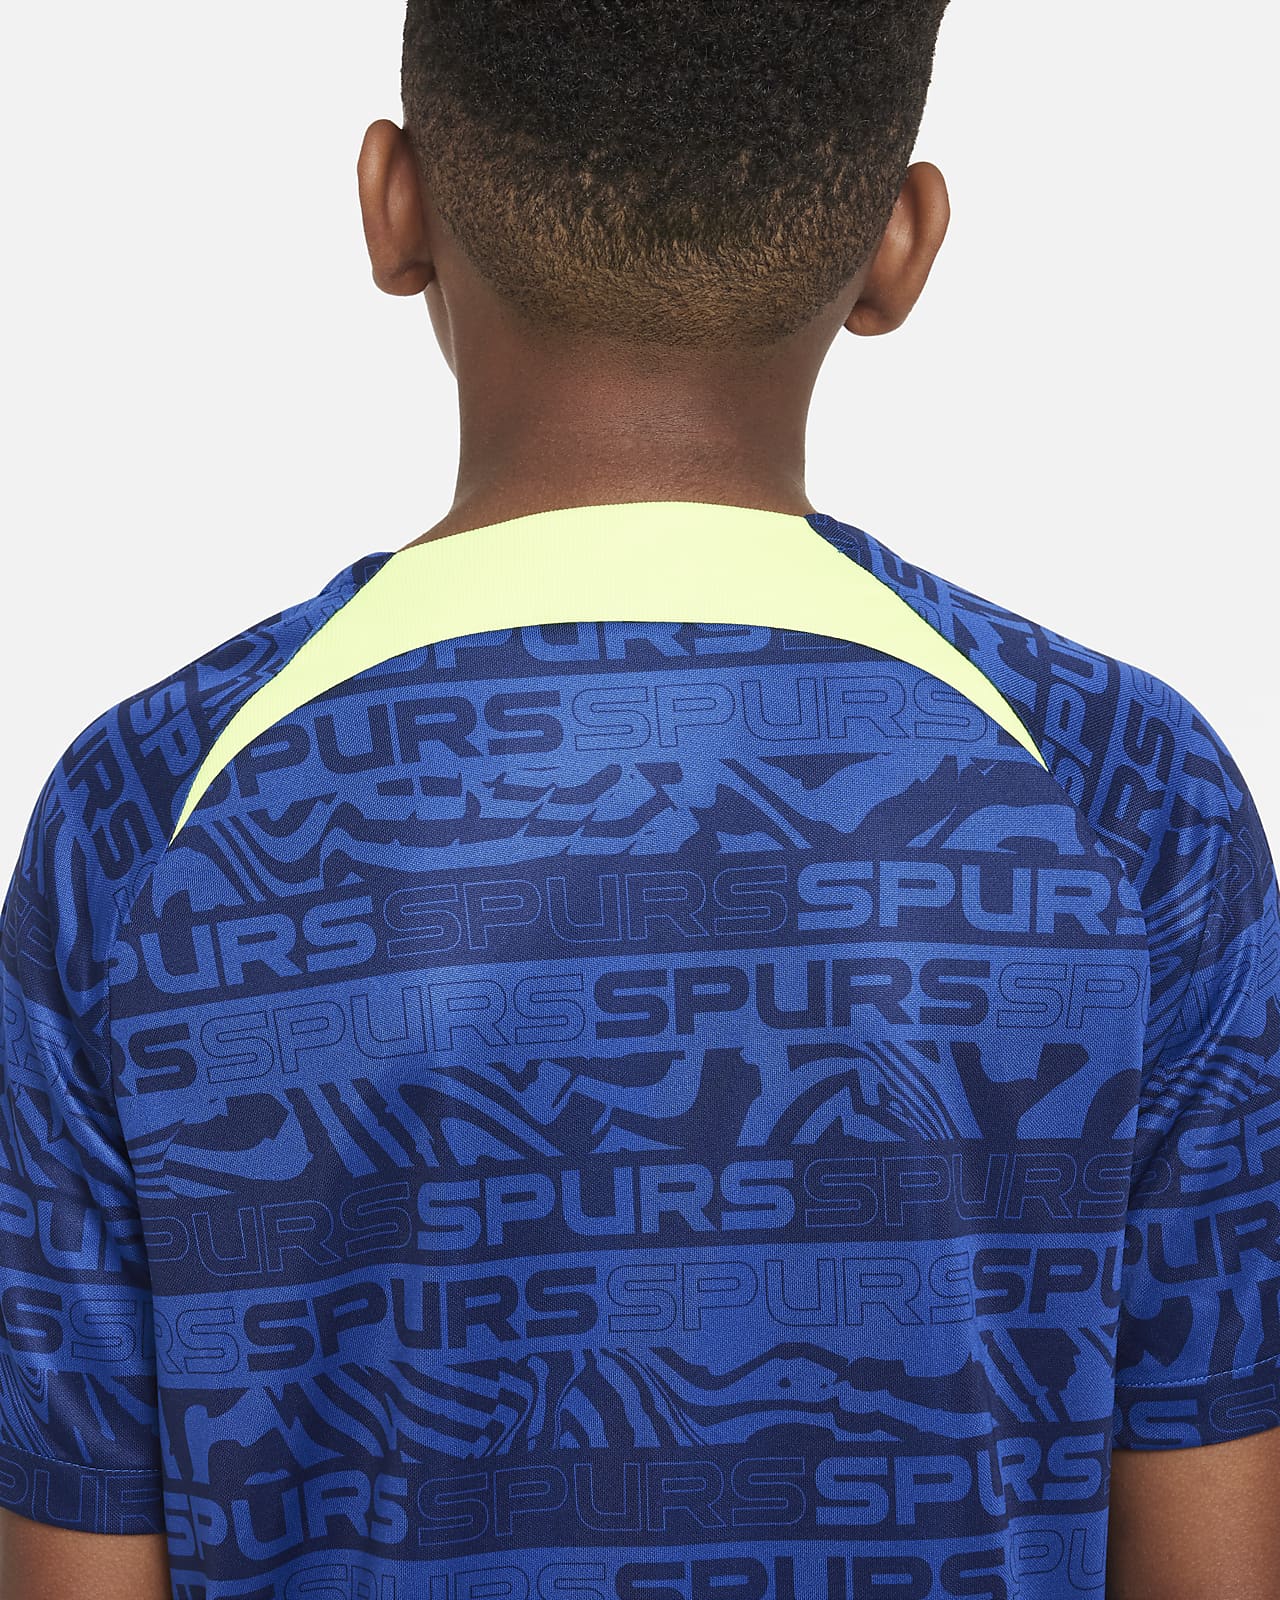 Nike Official 2019/20 Tottenham Hotspur Spurs Junior Boys Away Football  shirt